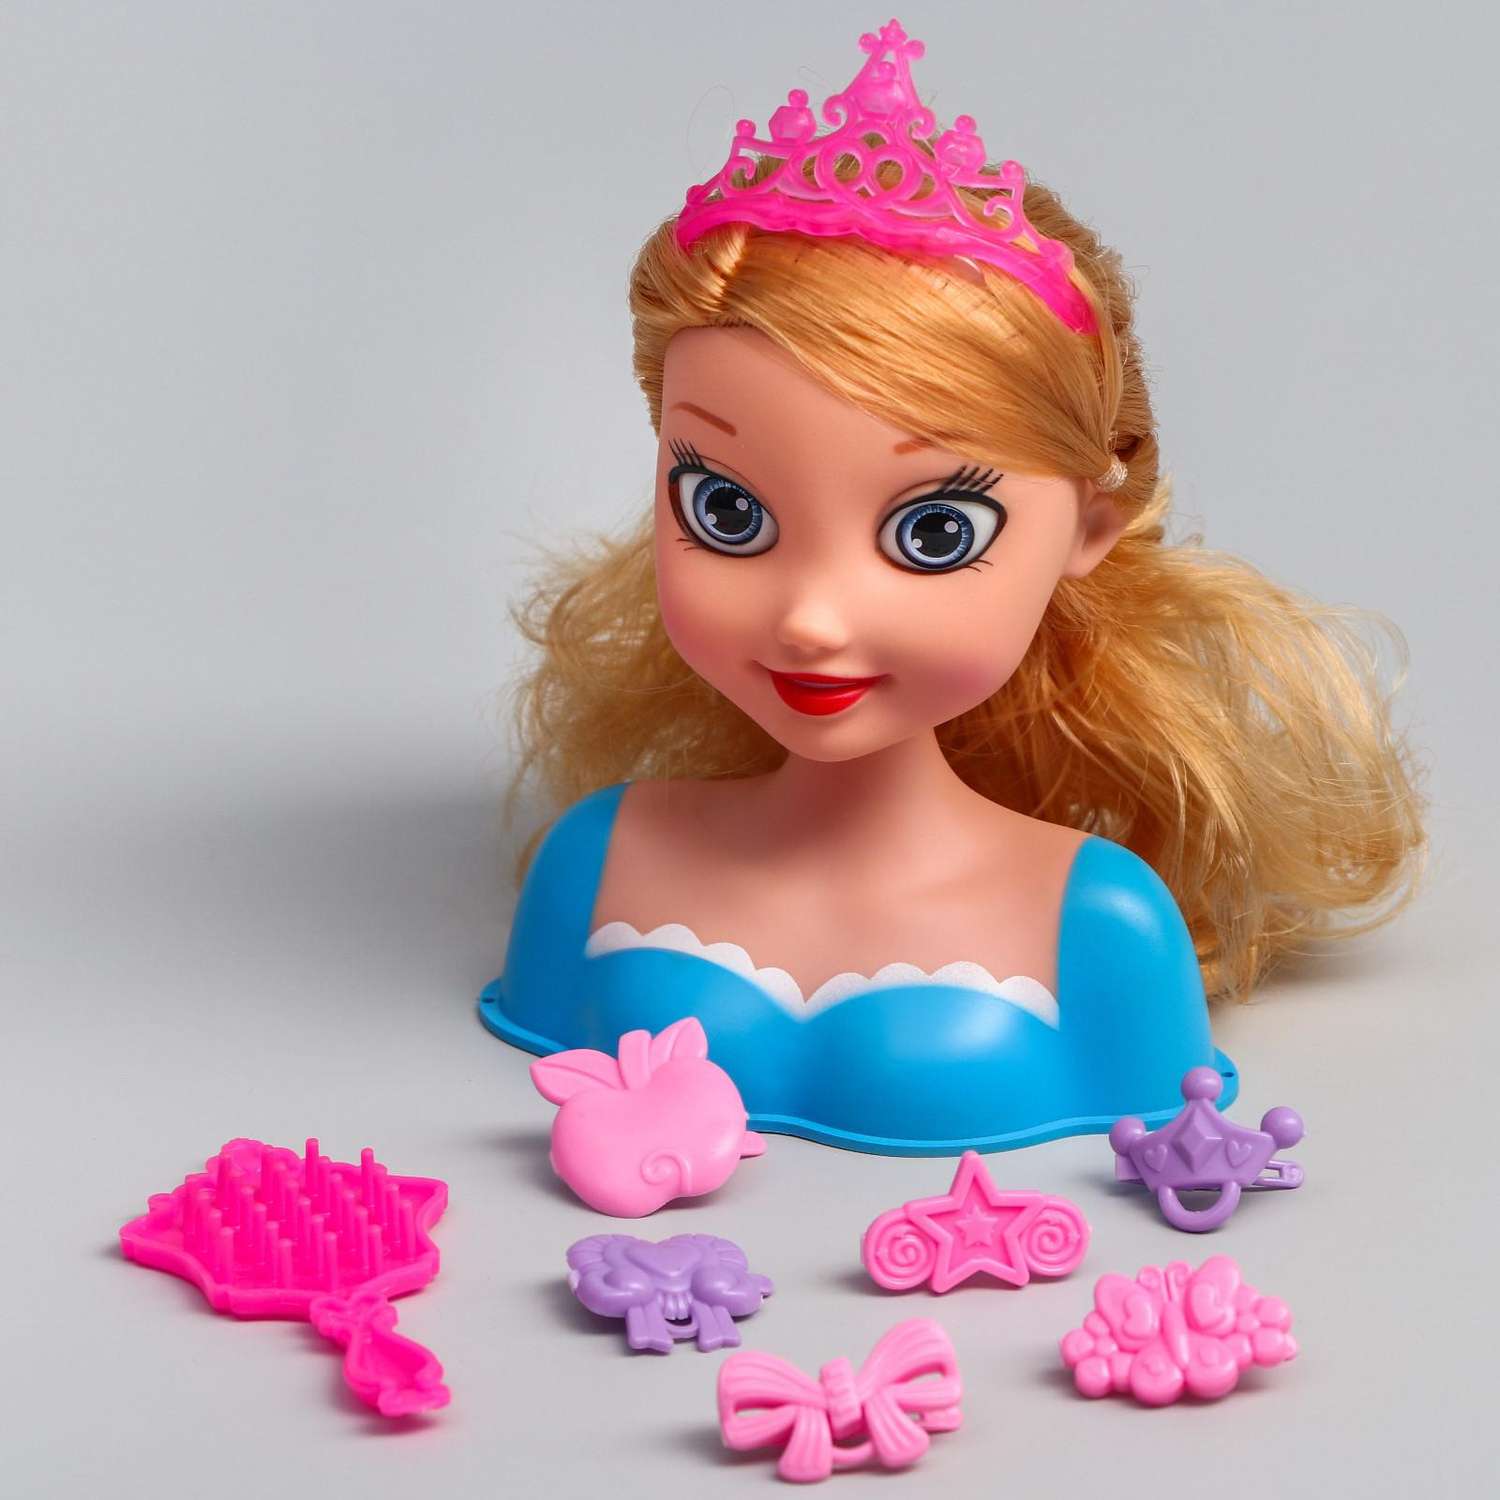 Игровой набор Disney манекен Принцессы с аксессуарами 5206158 - фото 1